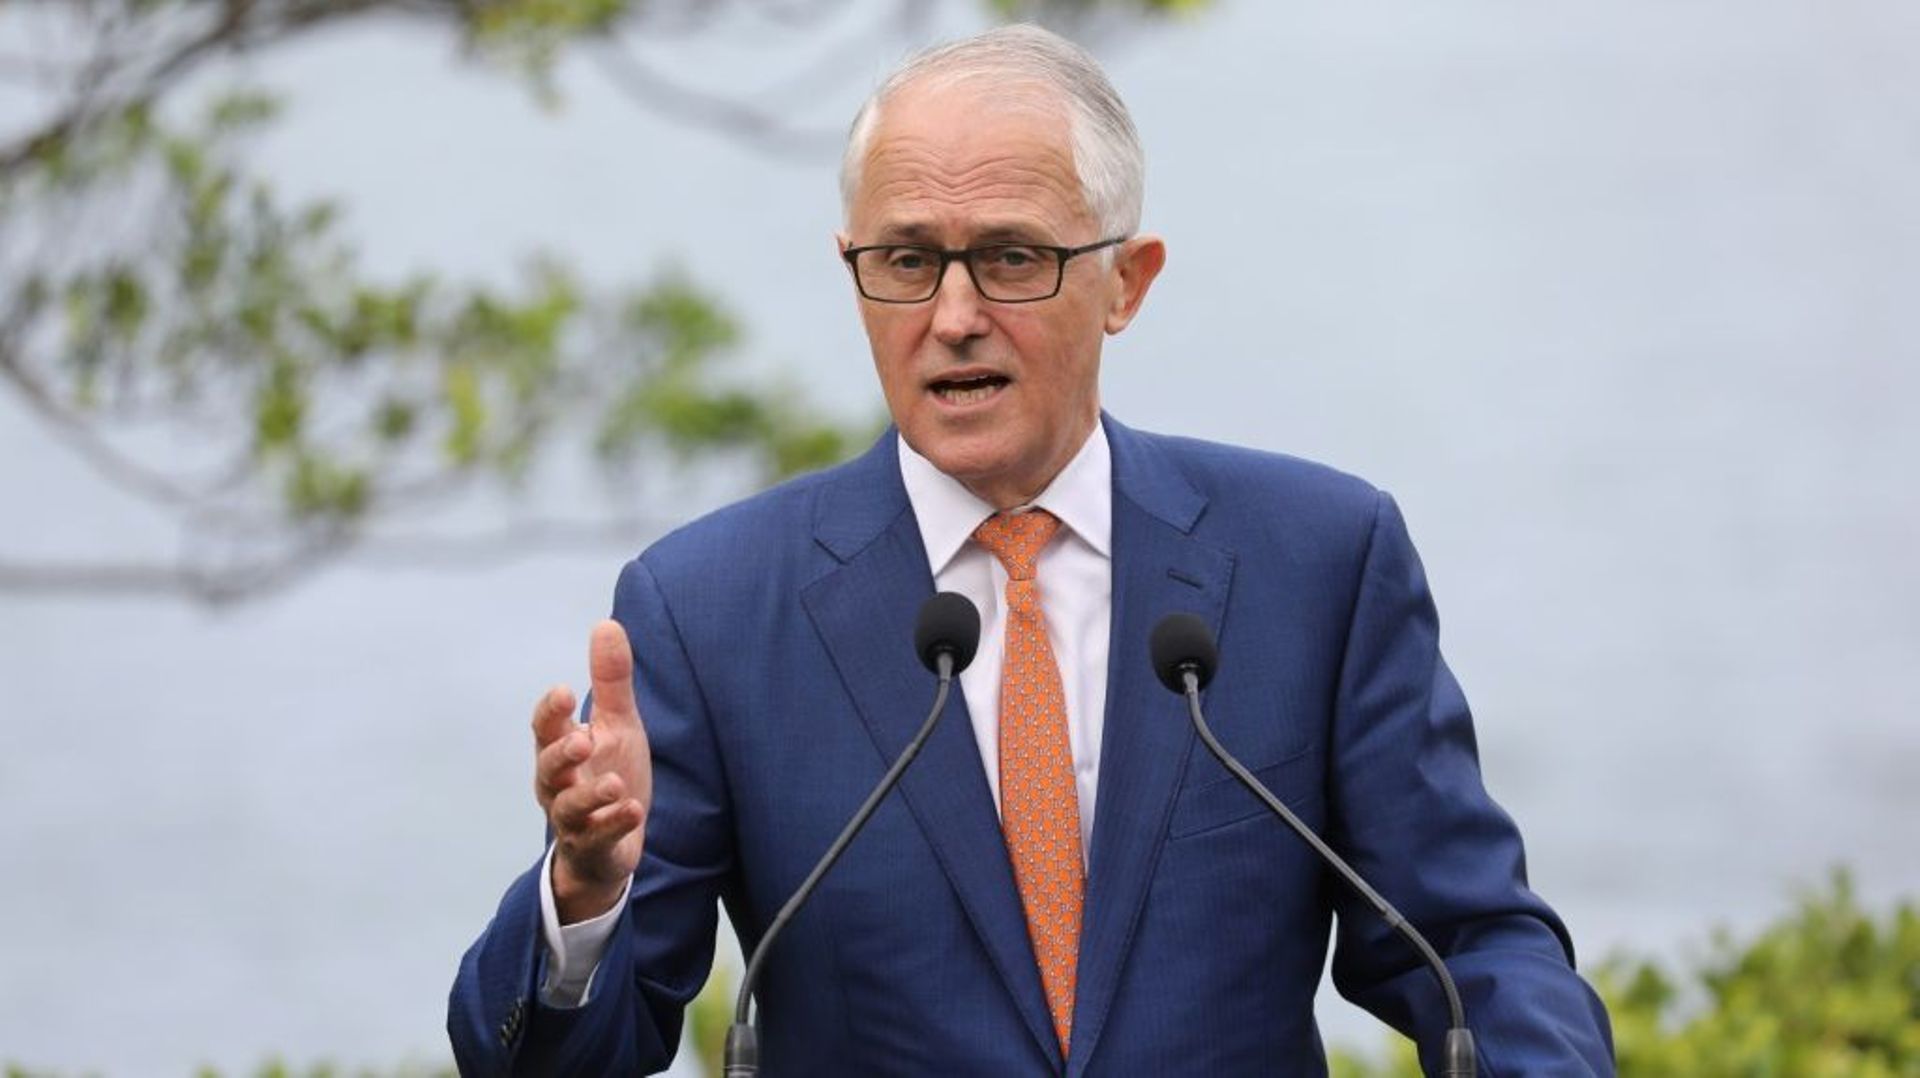 Le Premier ministre australien Malcolm Turnbull à Sydney le 2 mai 2018